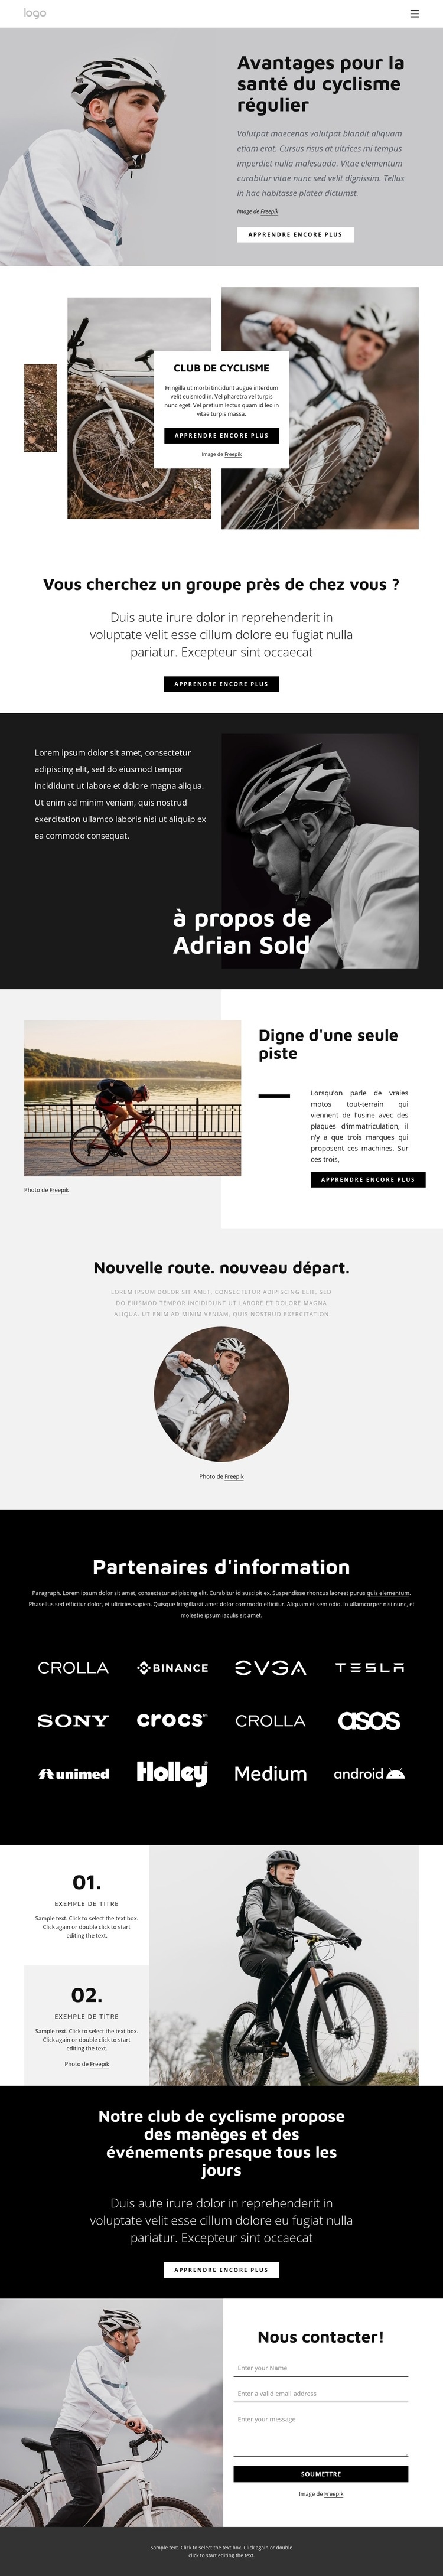 Avantages du cyclisme régulier Modèle HTML5